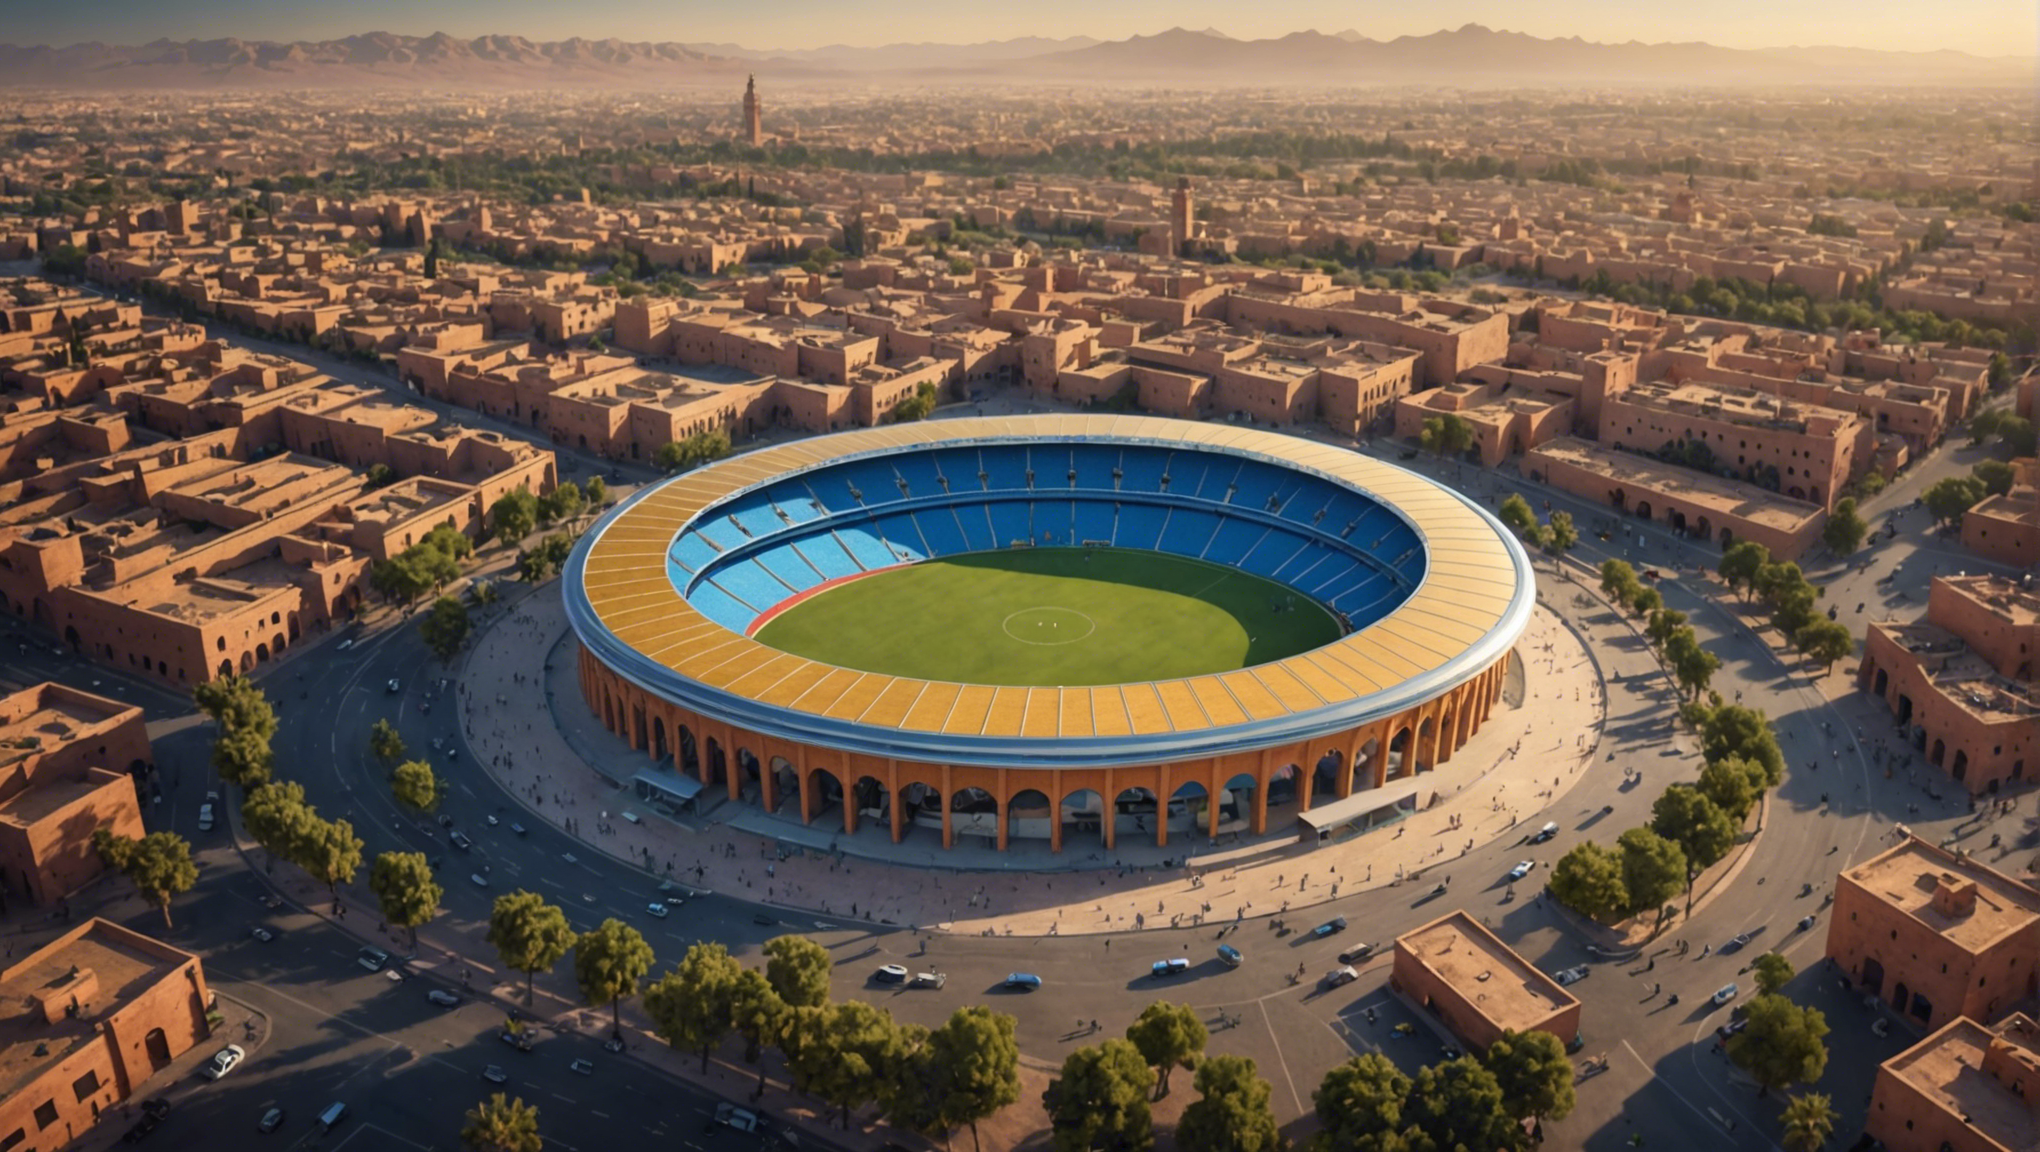 Descubra la anticipación y el entusiasmo que rodean el impacto potencial de la copa del mundo 2030 en la vibrante ciudad de Marrakech.